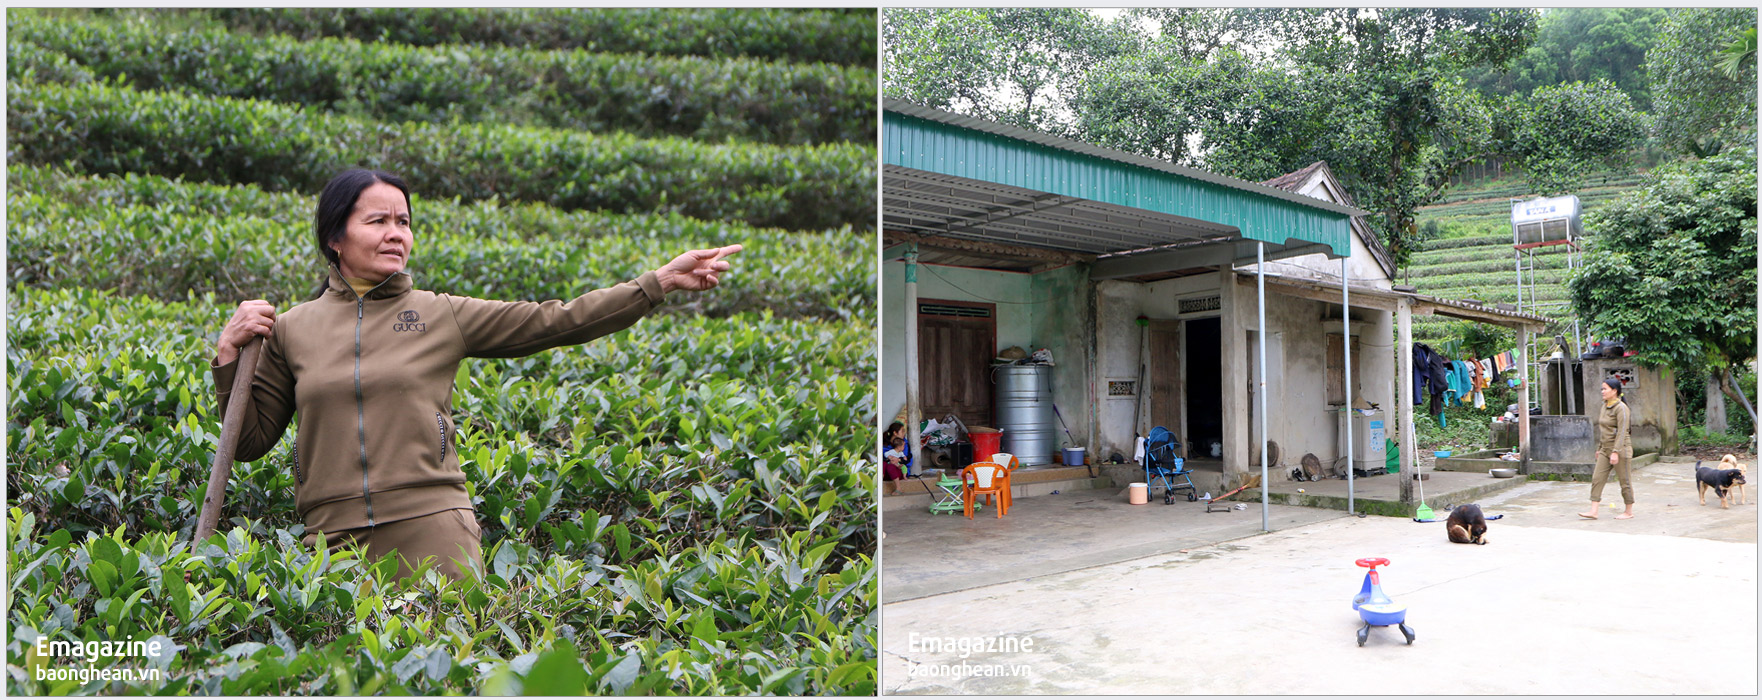 Bà Nguyễn Thị Kiều - thôn Ngọc Lâm, xã Thanh Thuỷ trước đây nhận khoán 0,5ha từ nông trường chè, cùng với khoảng 3 sào đất đã làm nhà ở, đến nay vẫn chưa làm được Giấy CNQSDĐ.